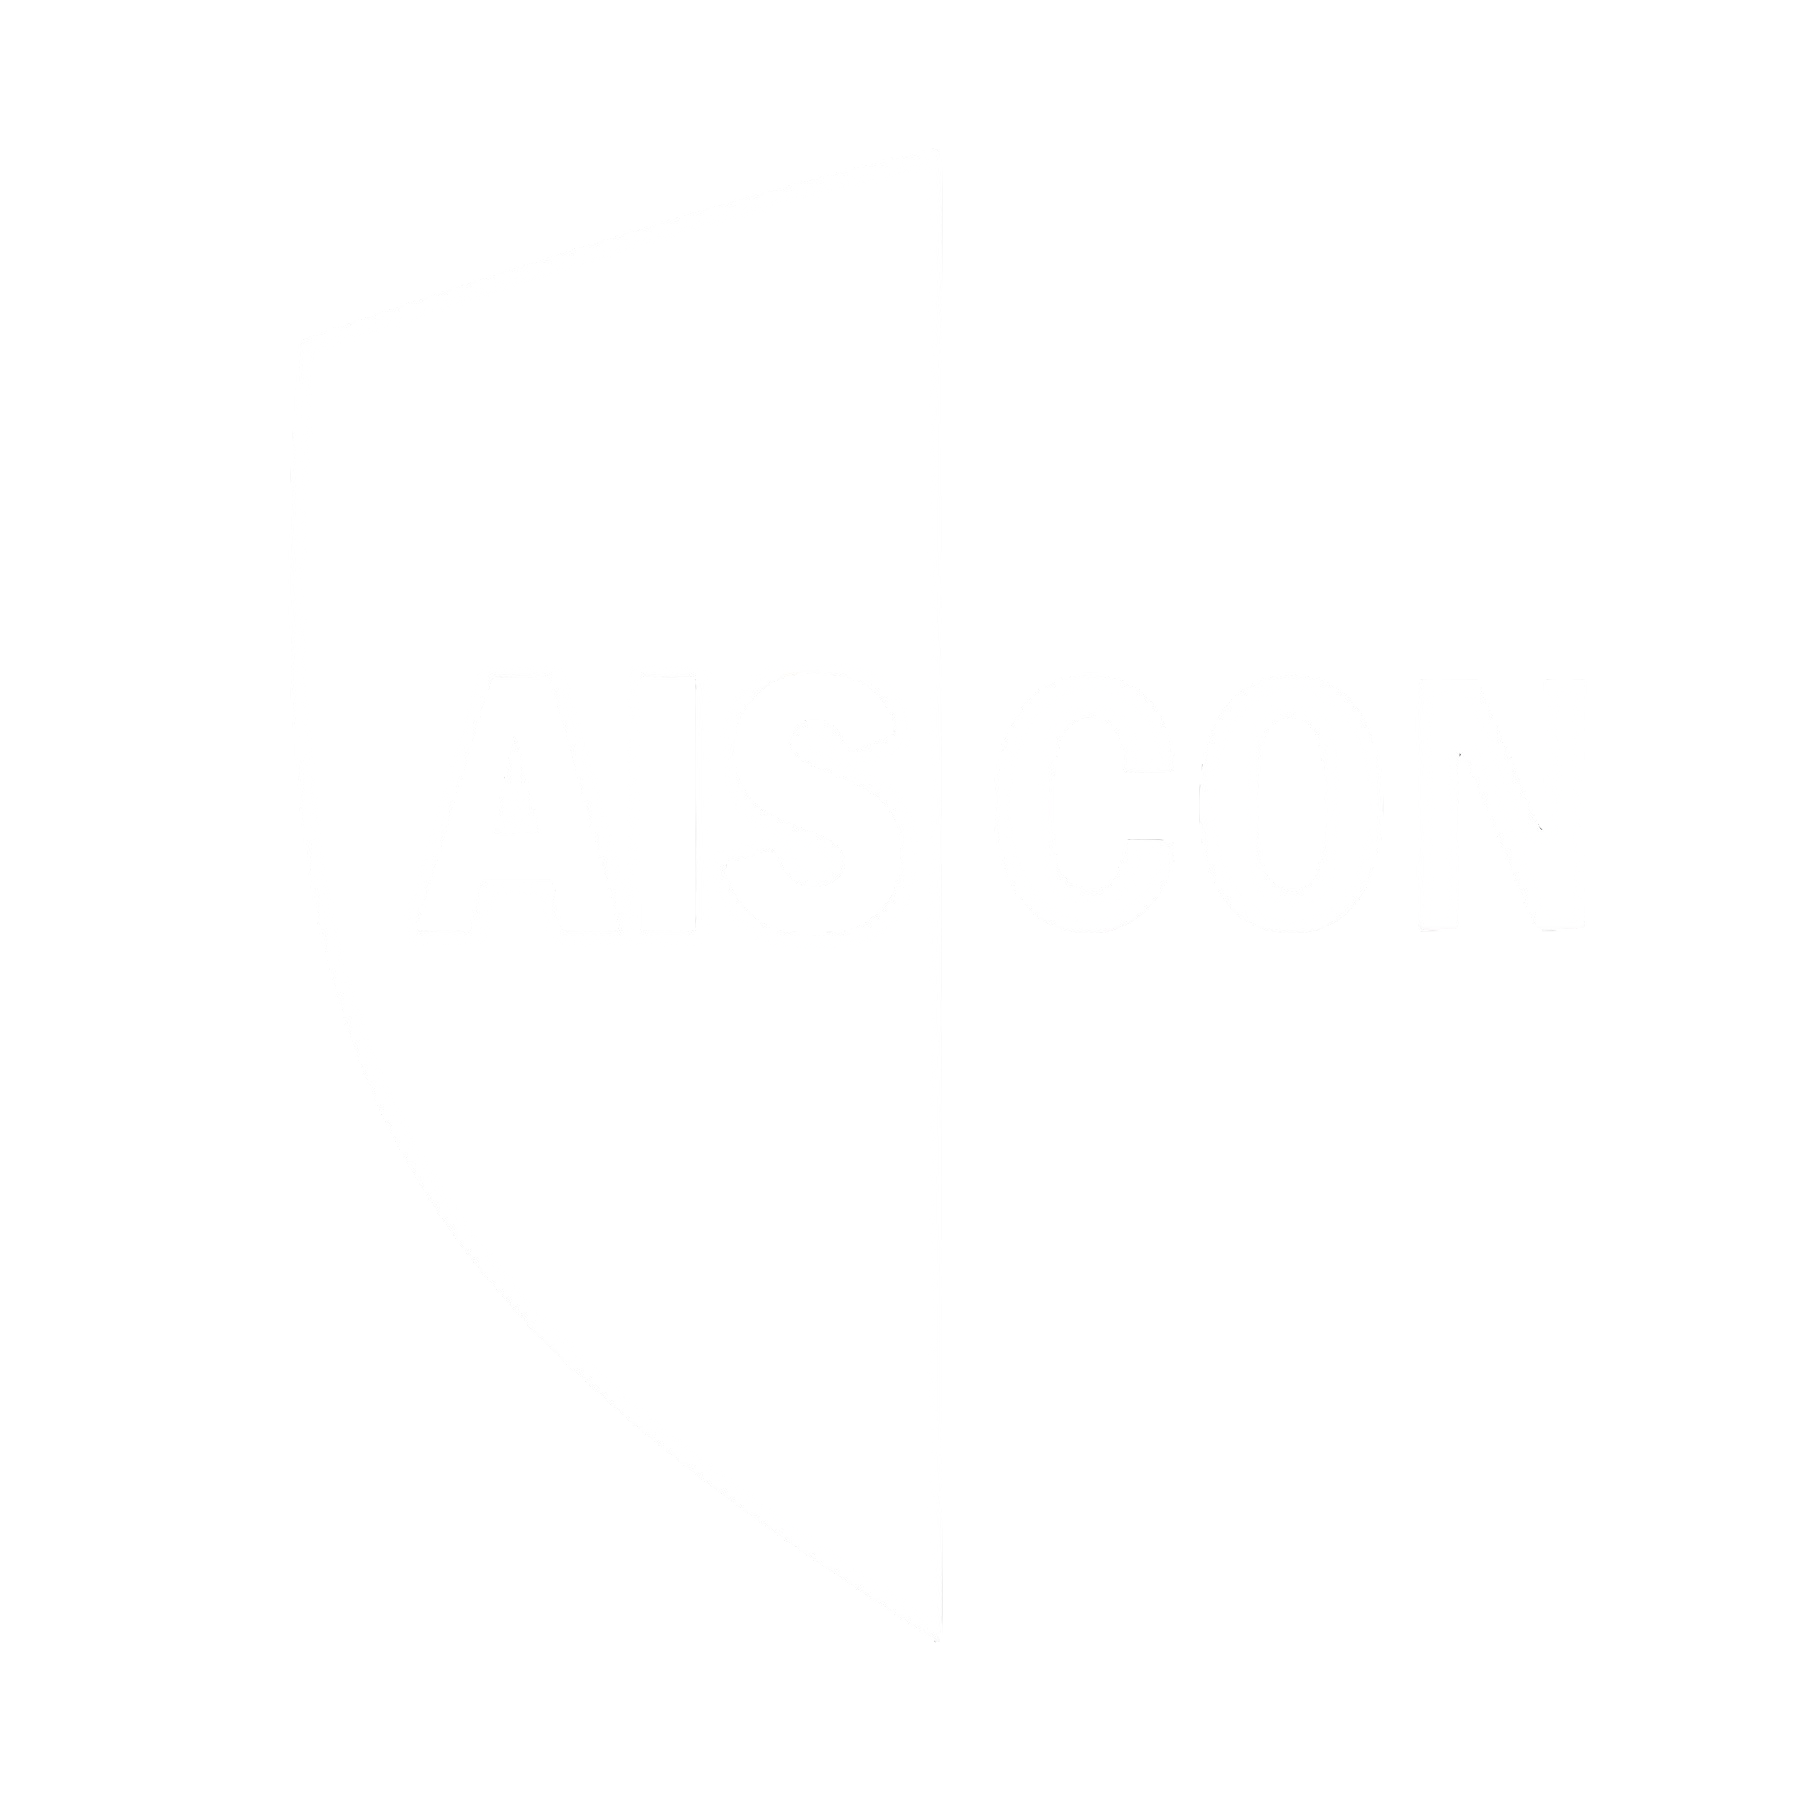 Aiscontransparent logo